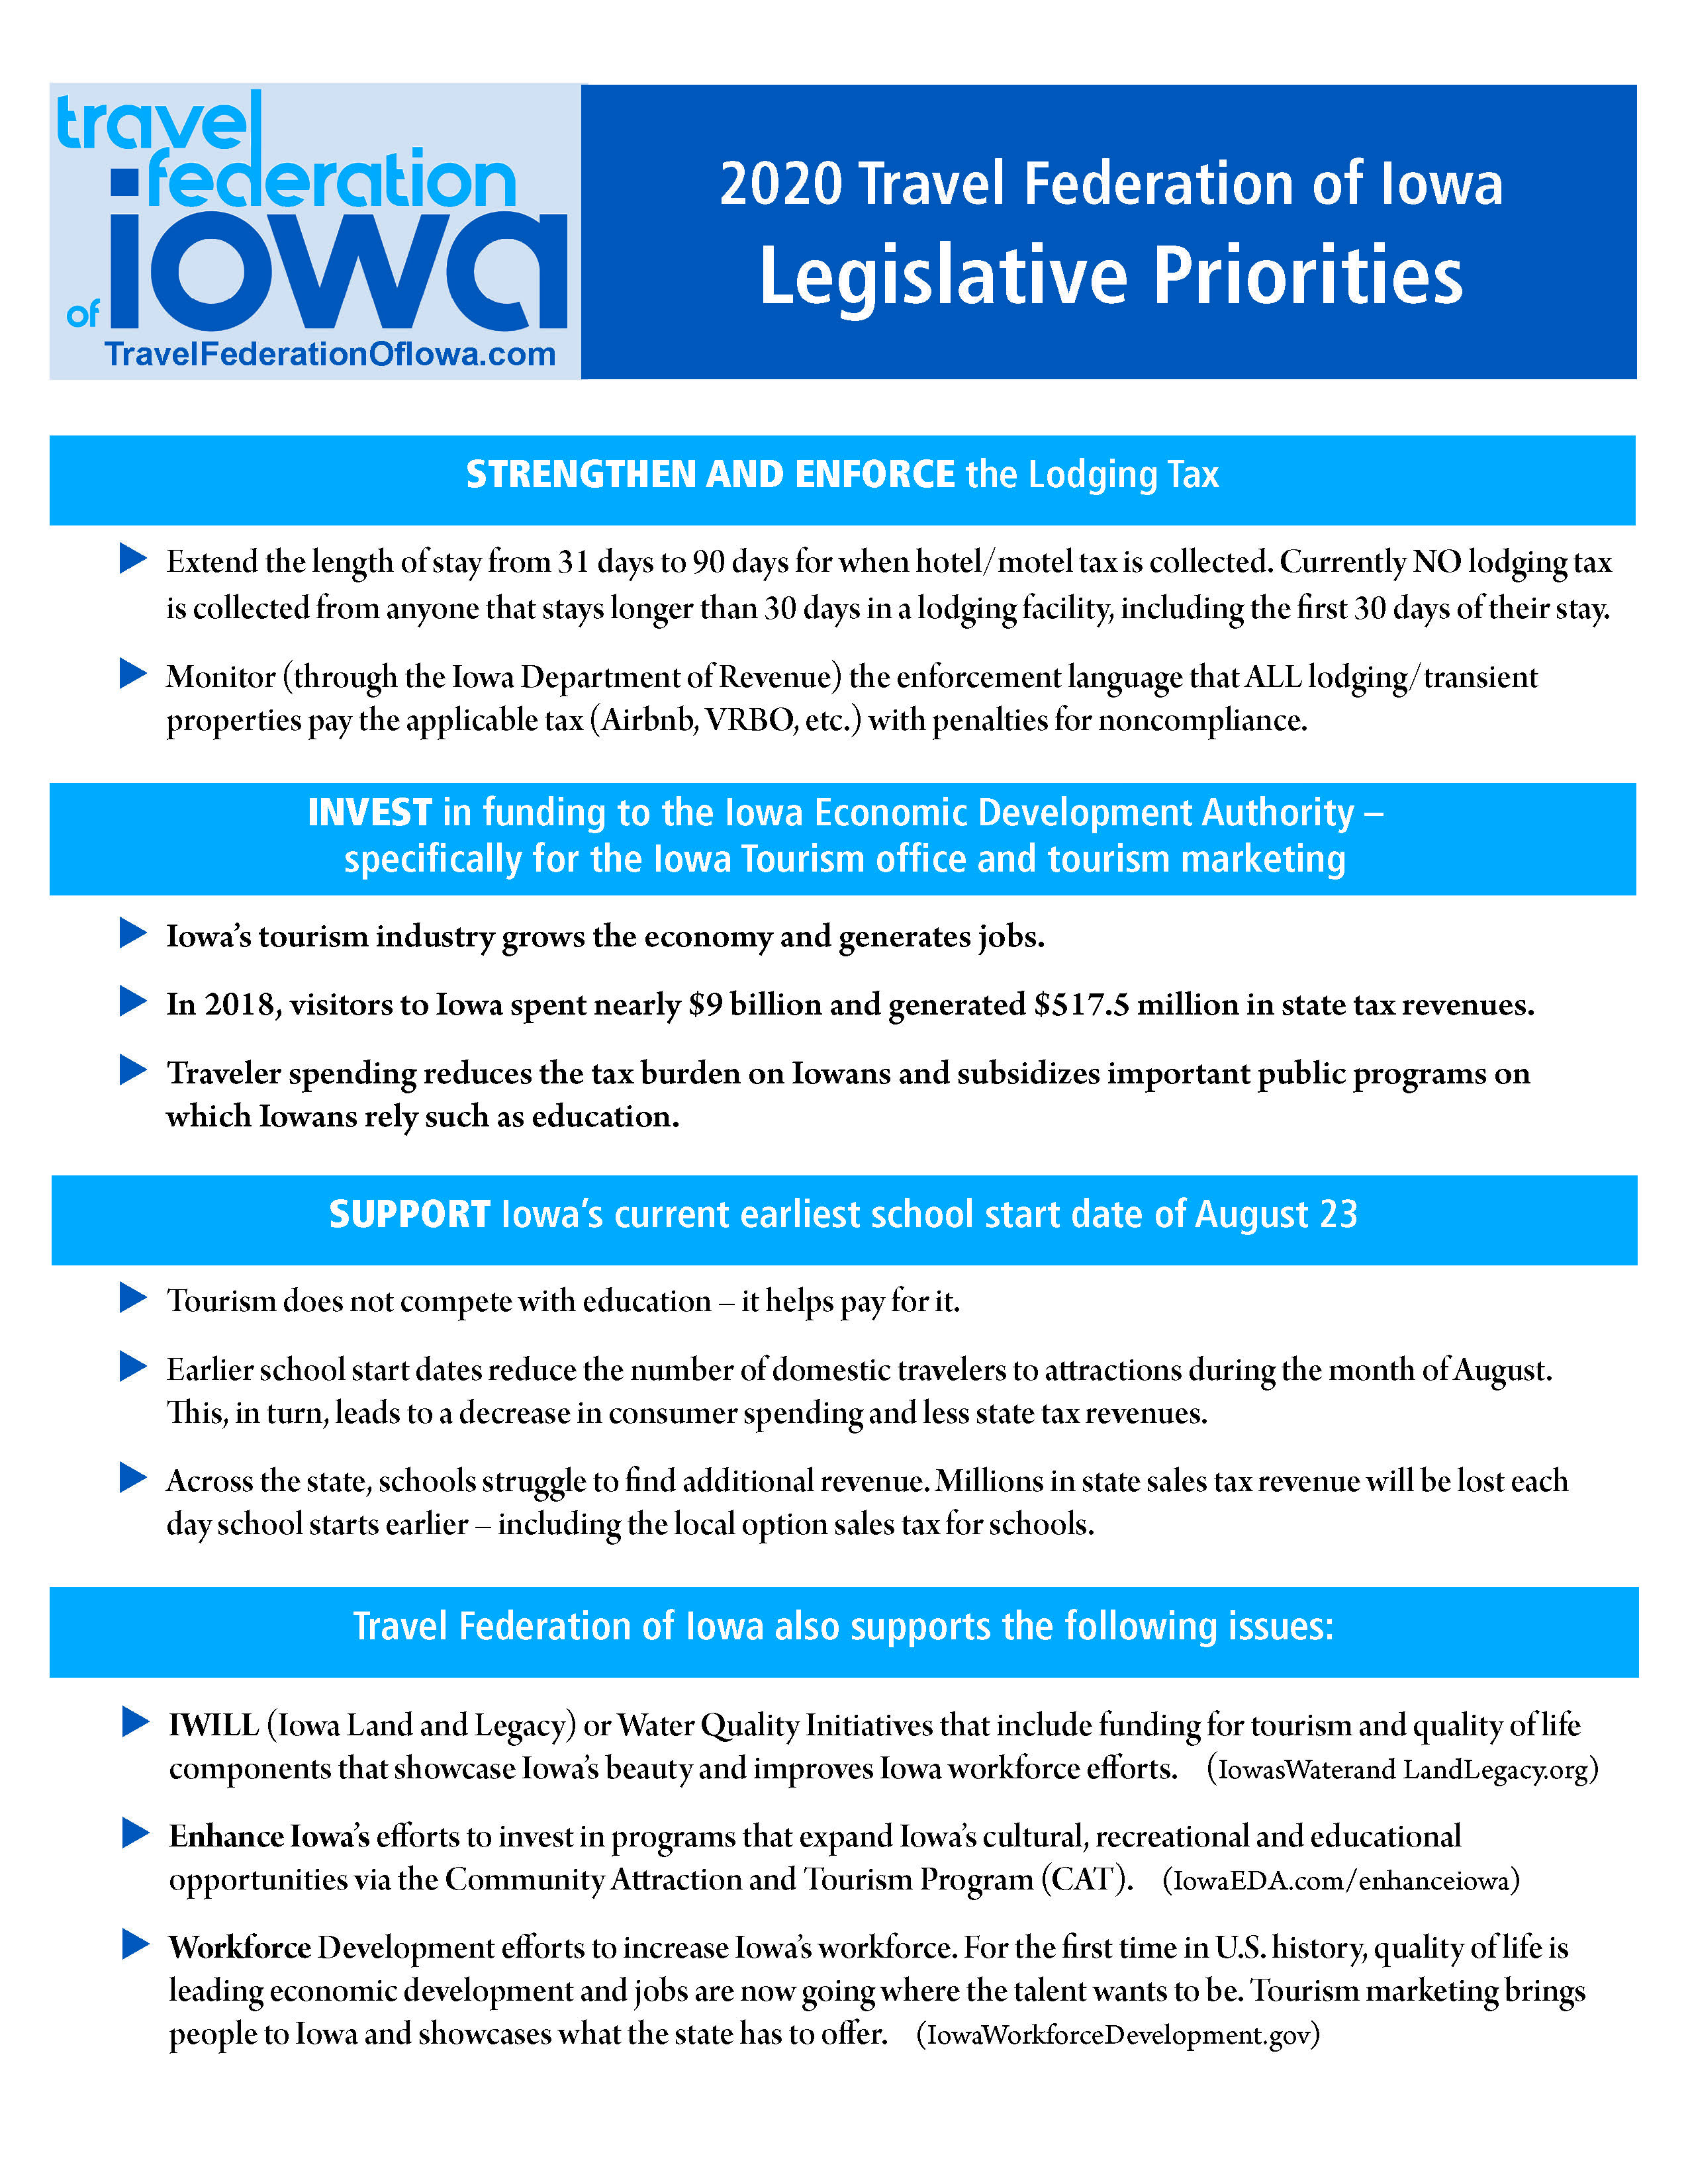 2020 TFI Legislative Priorities